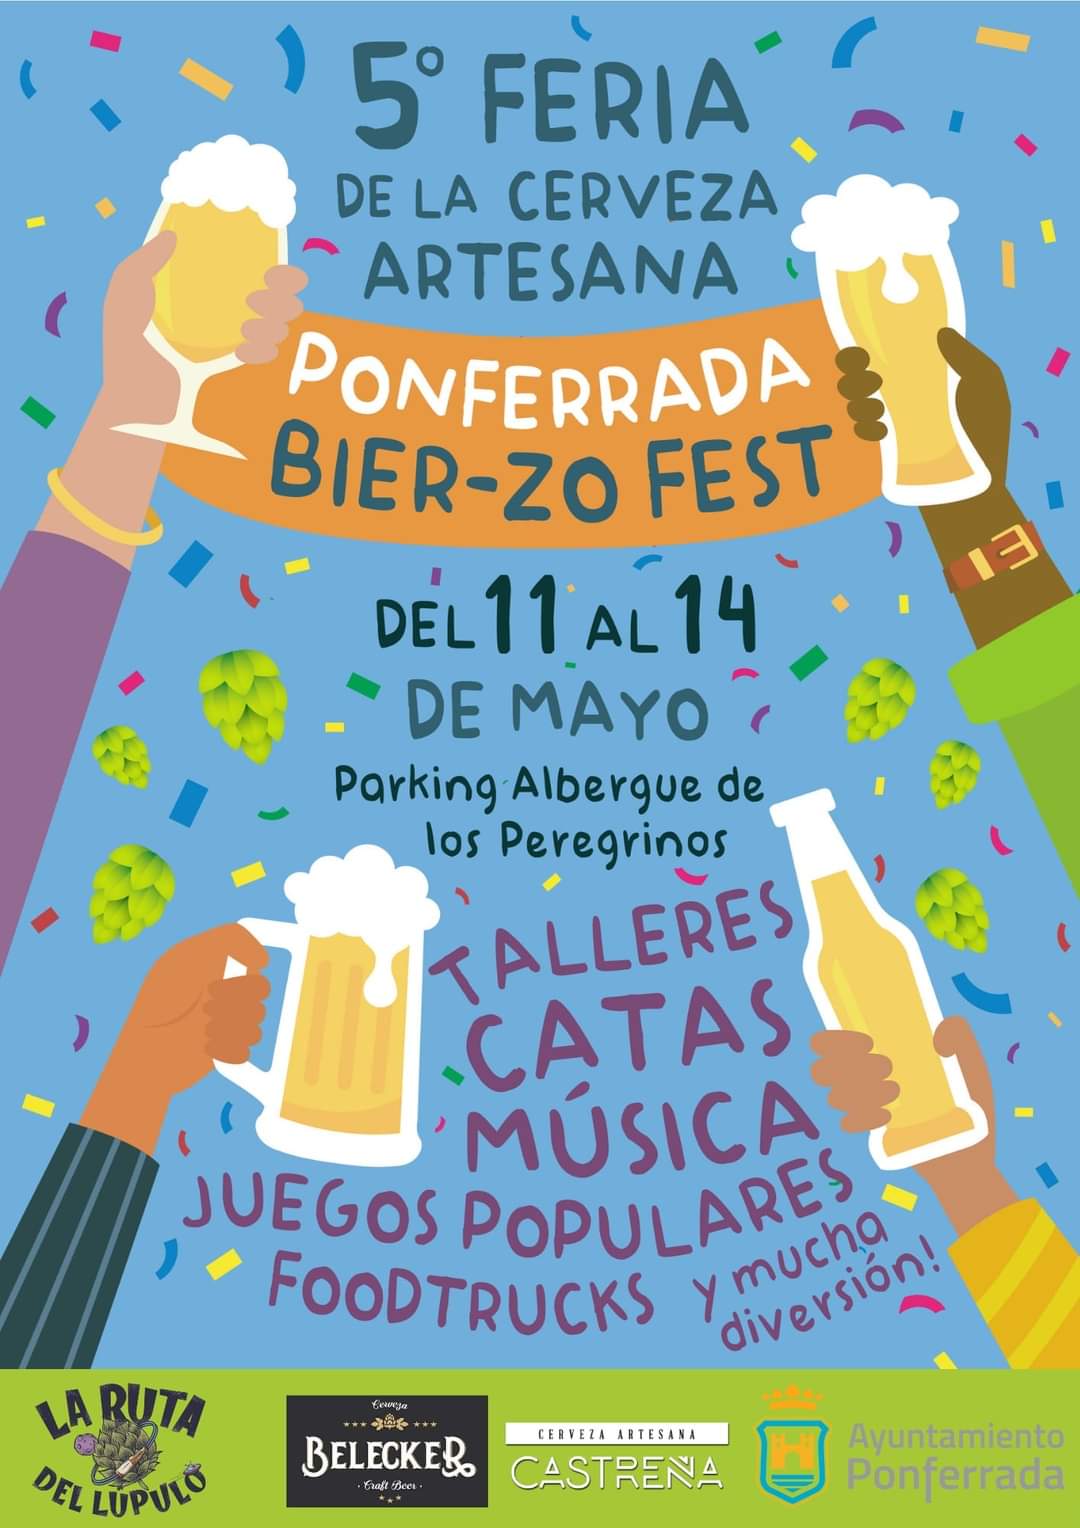 Ponferrada volverá a celebrar Bier-zo Fest, la Feria de la cerveza artesana que alcanza su 5ª edición 3